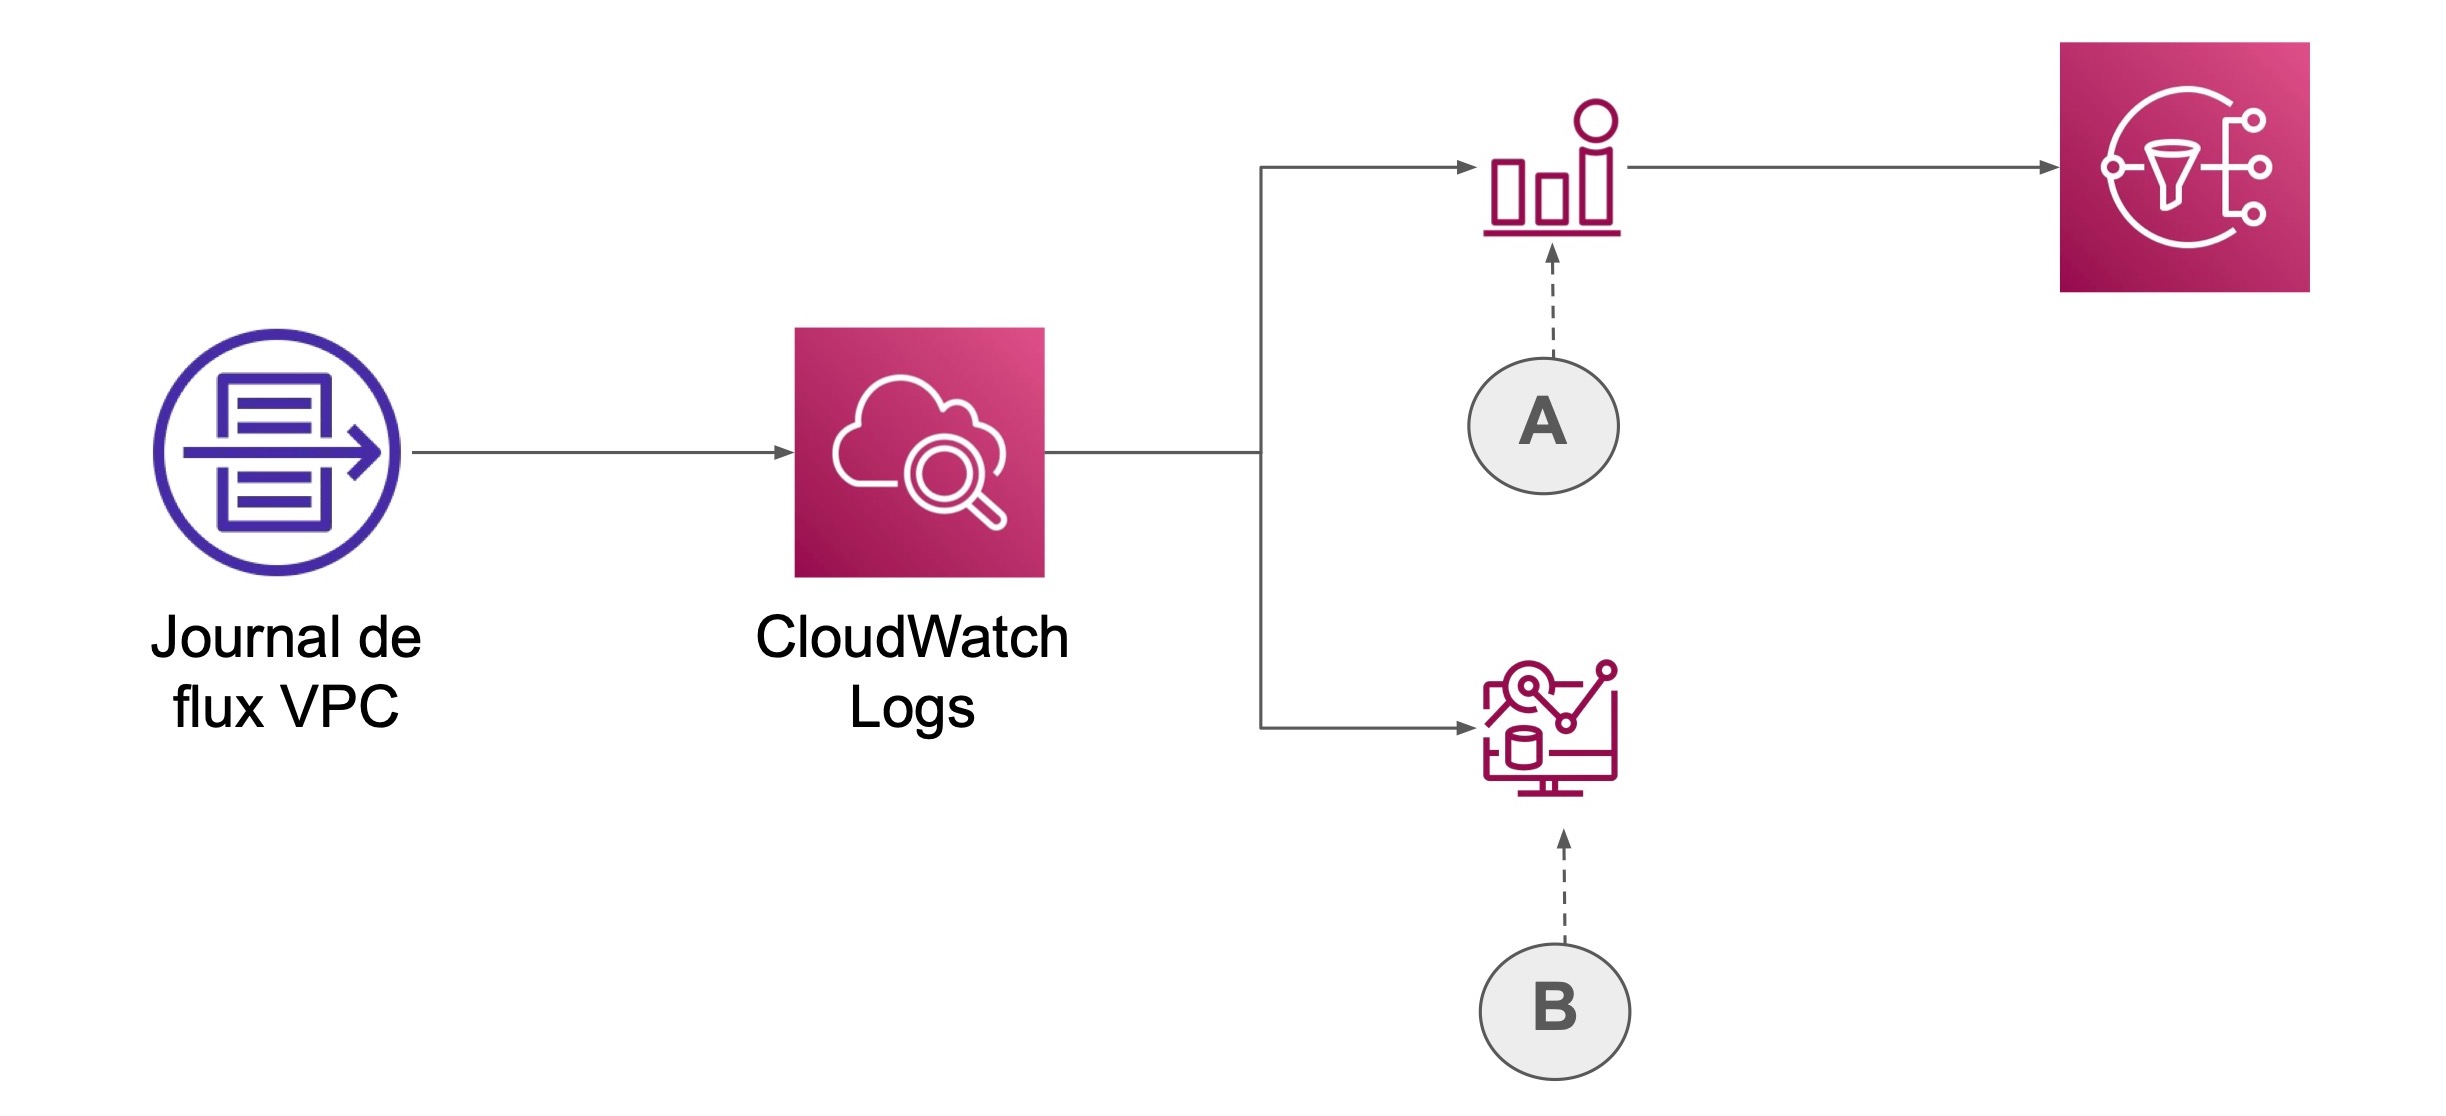 Un chemin mène du journal de flux VPC vers CloudWatch Logs puis se divise vers les alertes (A) et logs (B)